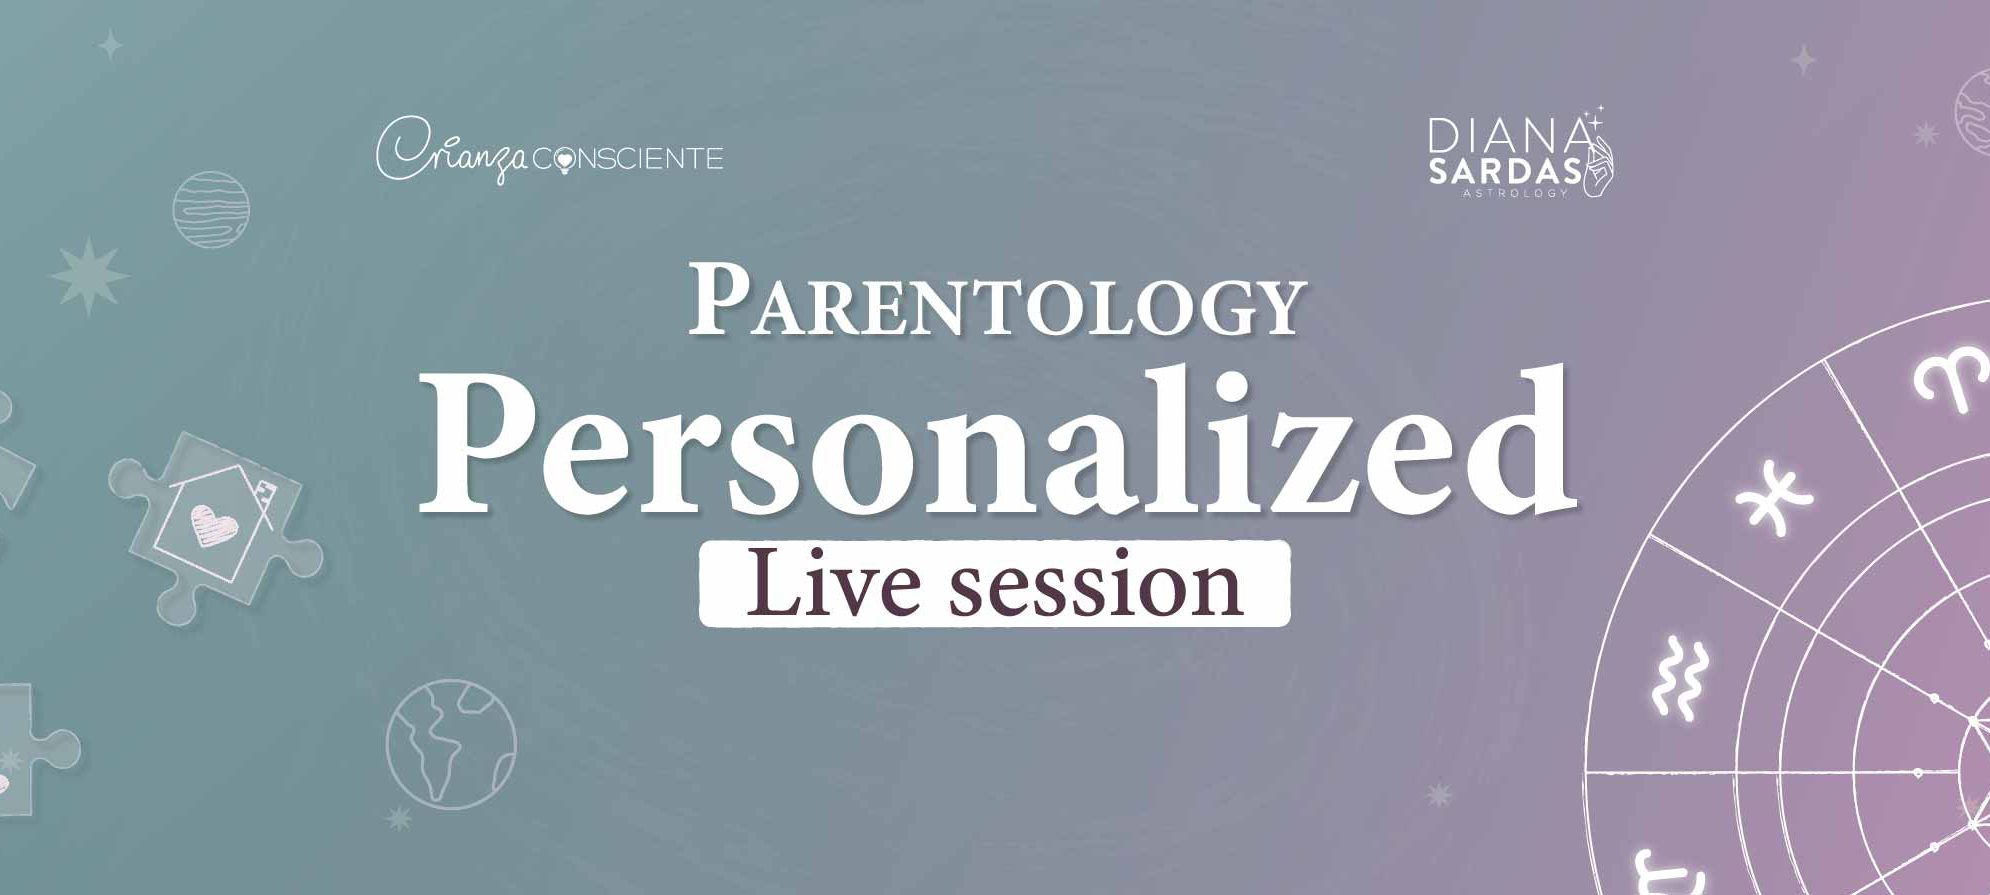 Parentology personal Live sessions metaslider